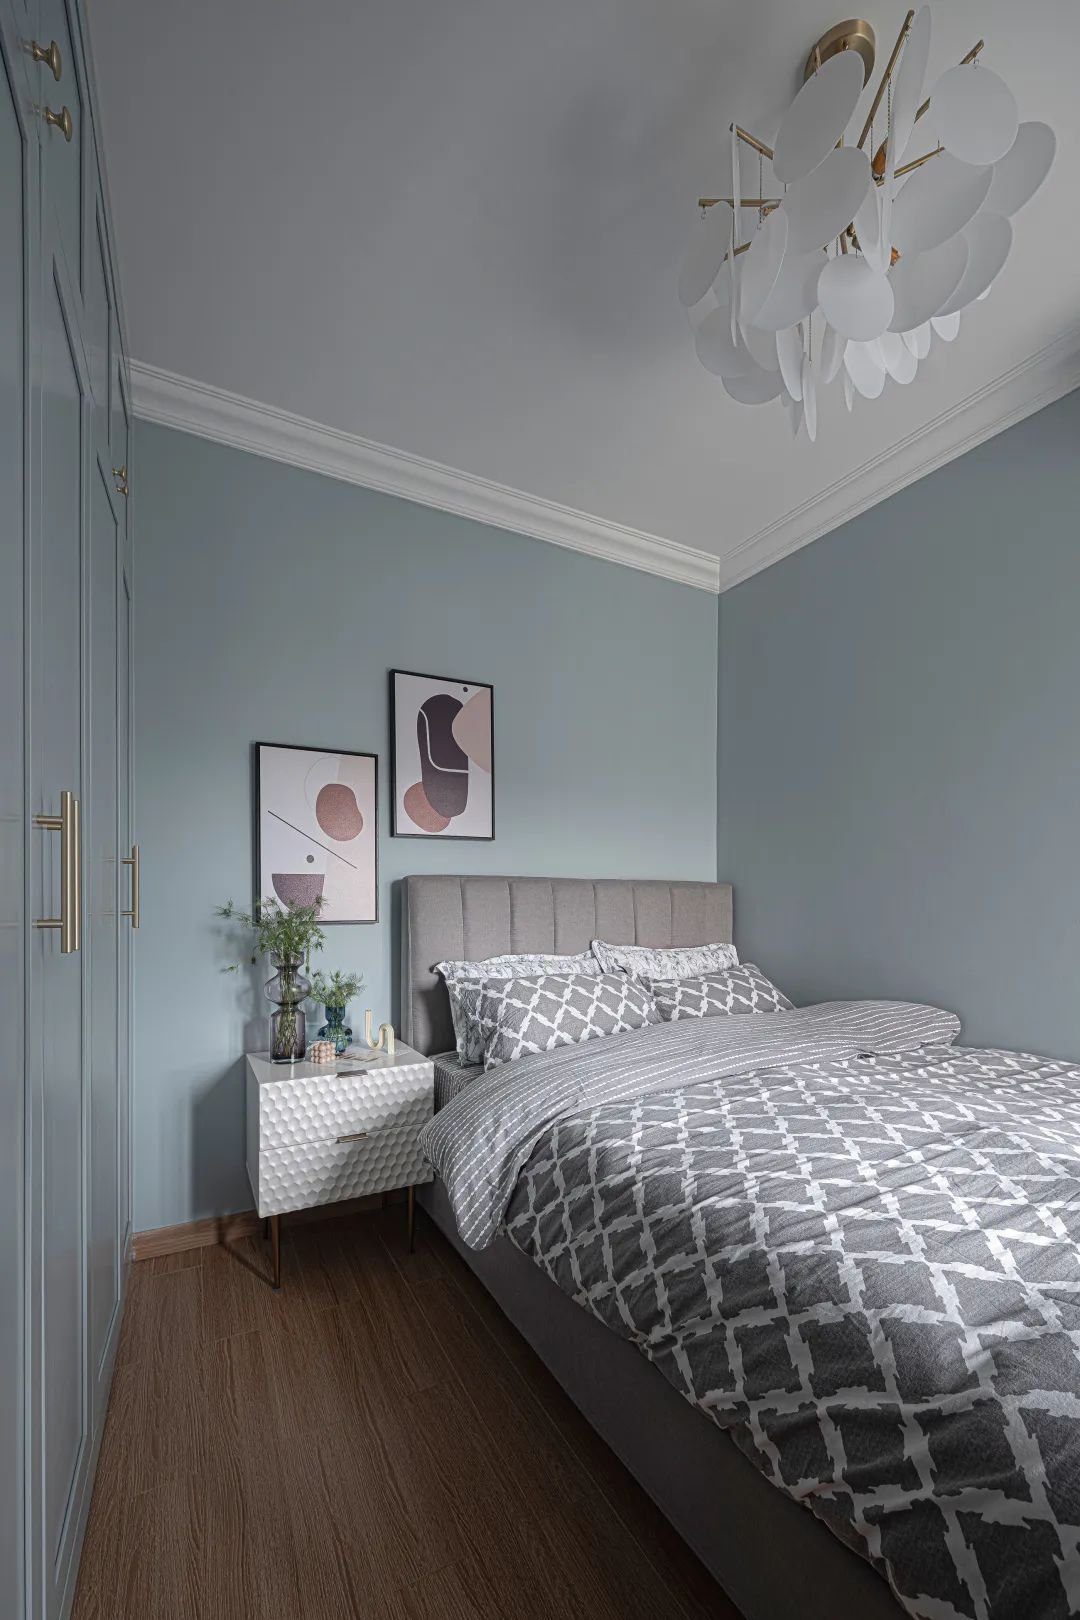 墙面的灰蓝色是多乐士的30bg 56/045,衣柜和墙漆的颜色,尽量选择同一